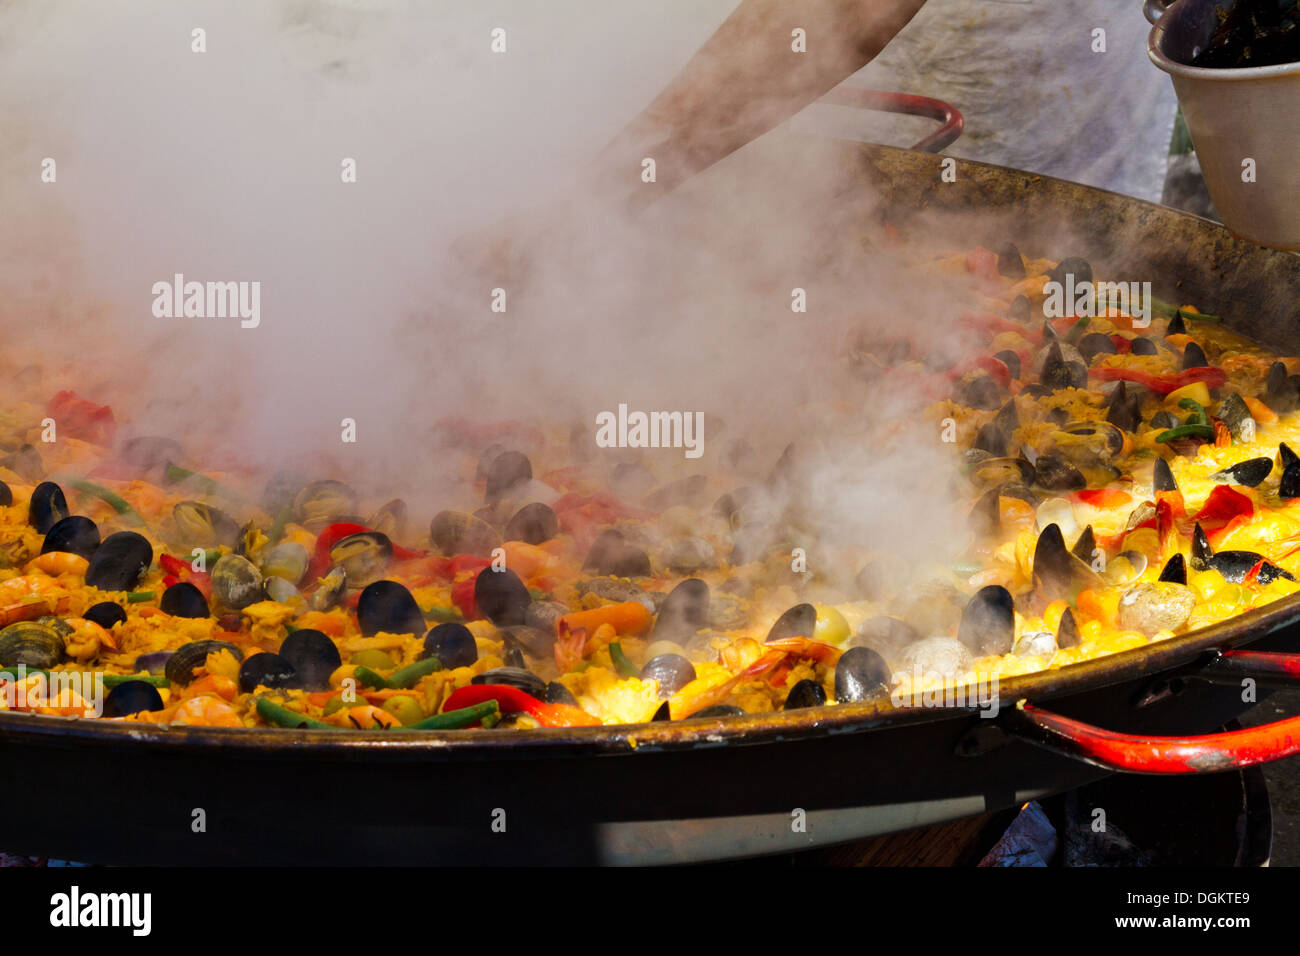 Kochen Sie, tendenziell eine große Pfanne Paella Kochen über einem Holzfeuer auf einem Meeresfrüchte-Festival in Santa Barbara, Kalifornien Stockfoto